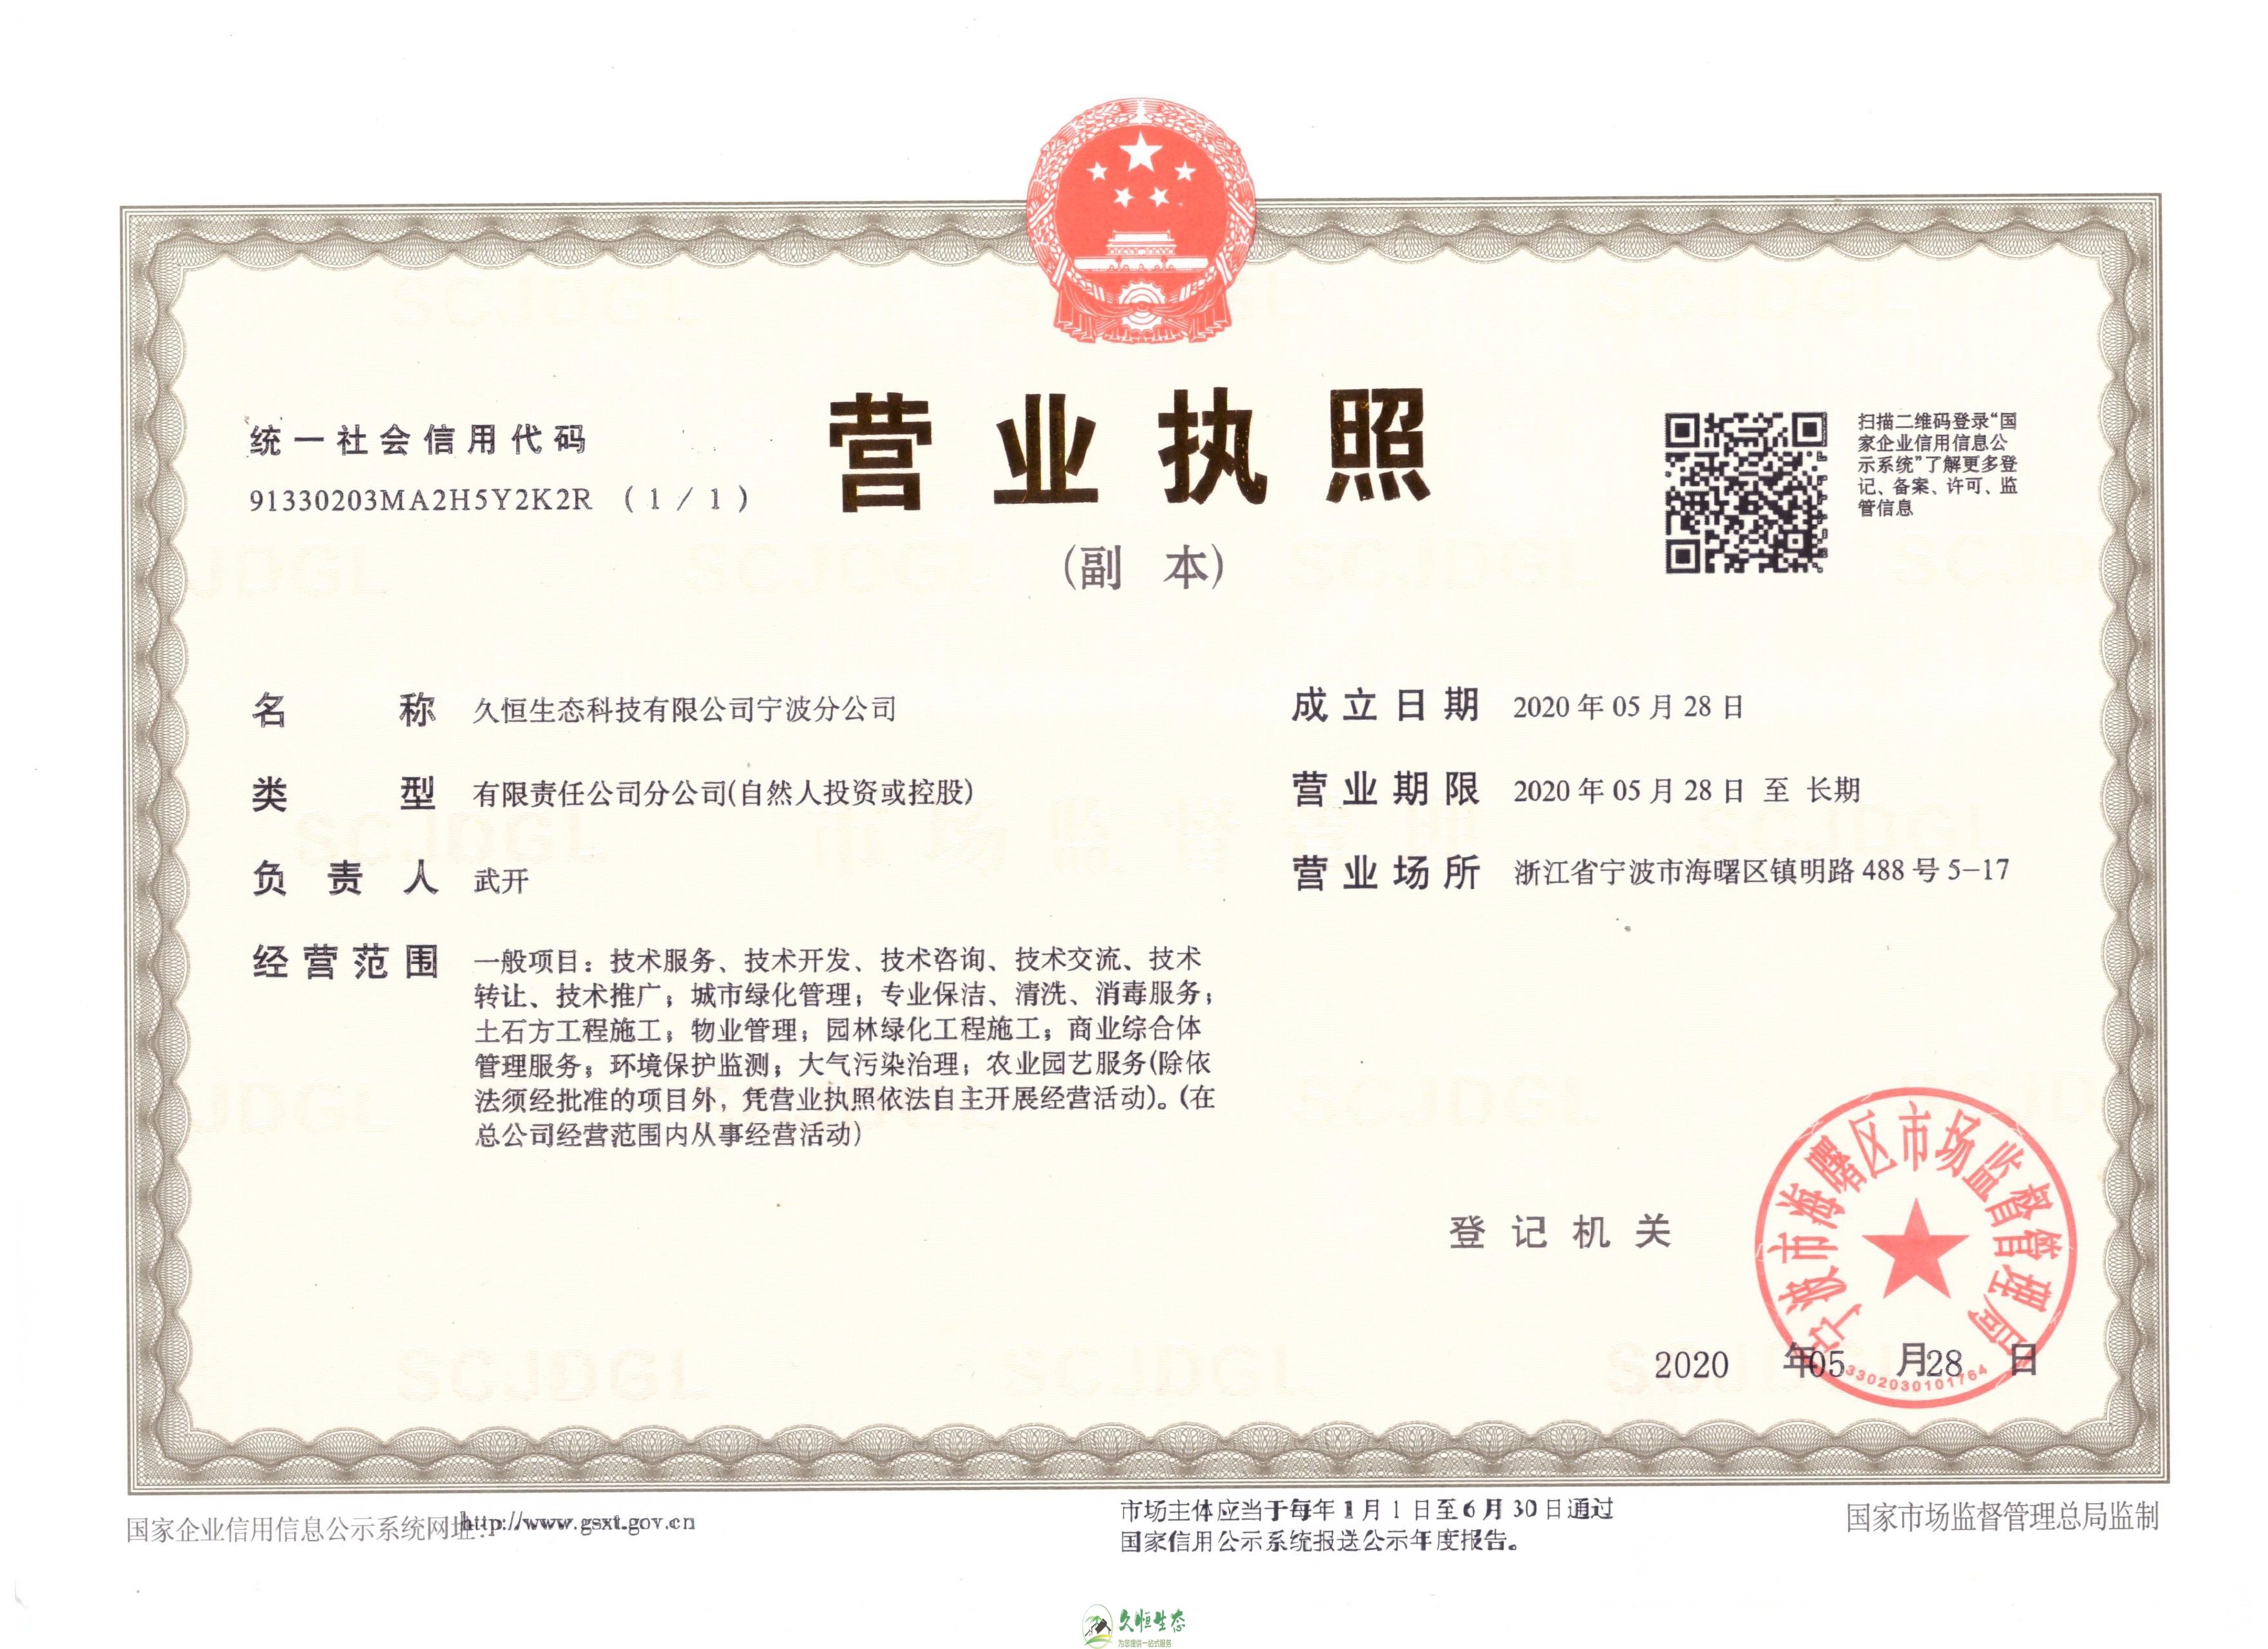 汉南久恒生态宁波分公司2020年5月28日成立